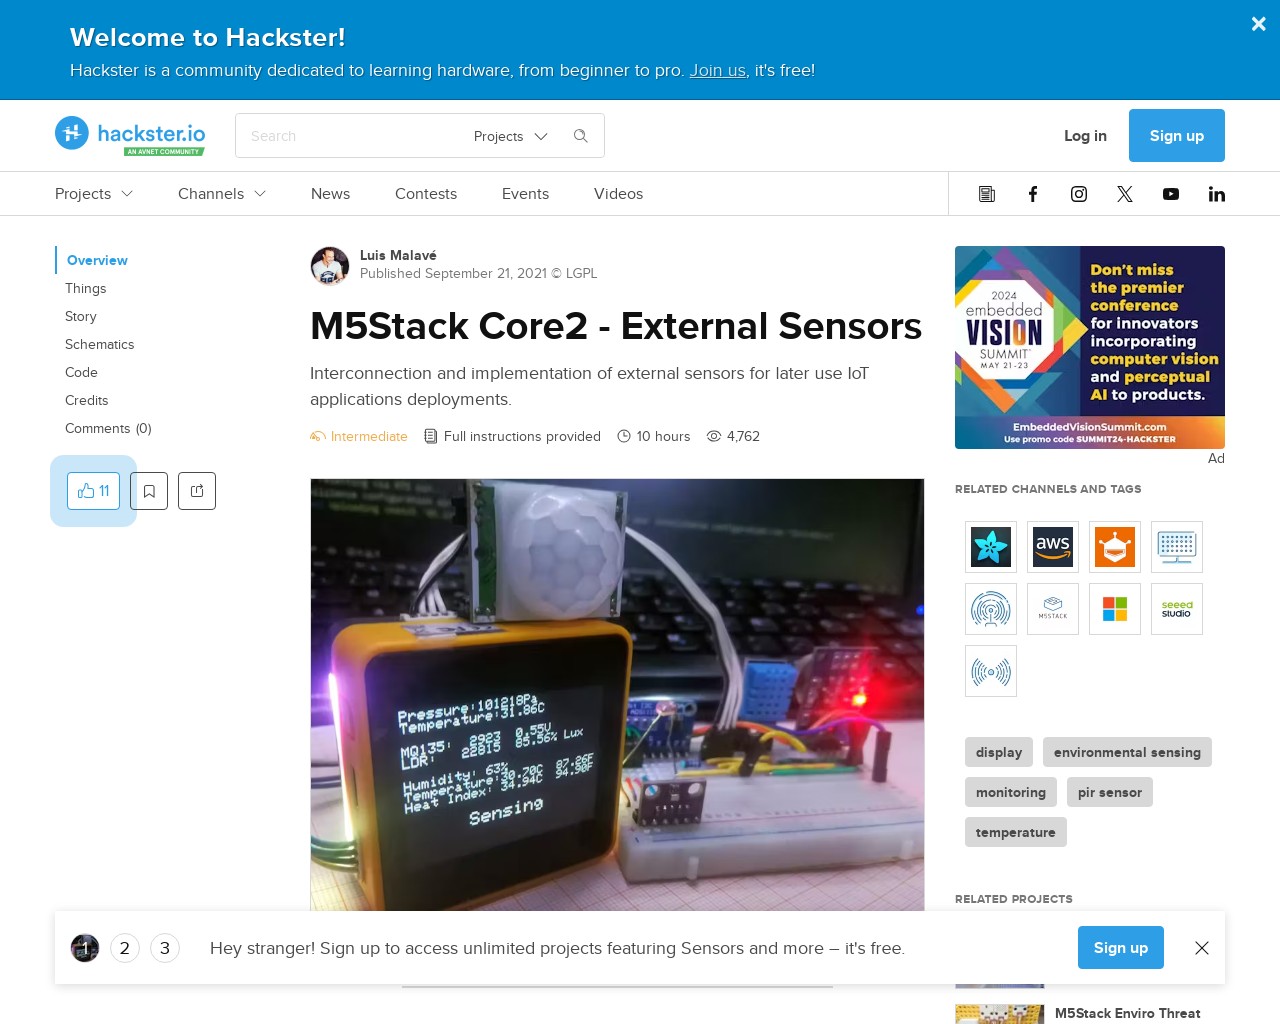 Картинка скриншота сайта - M5Stack Core2 - External Sensors